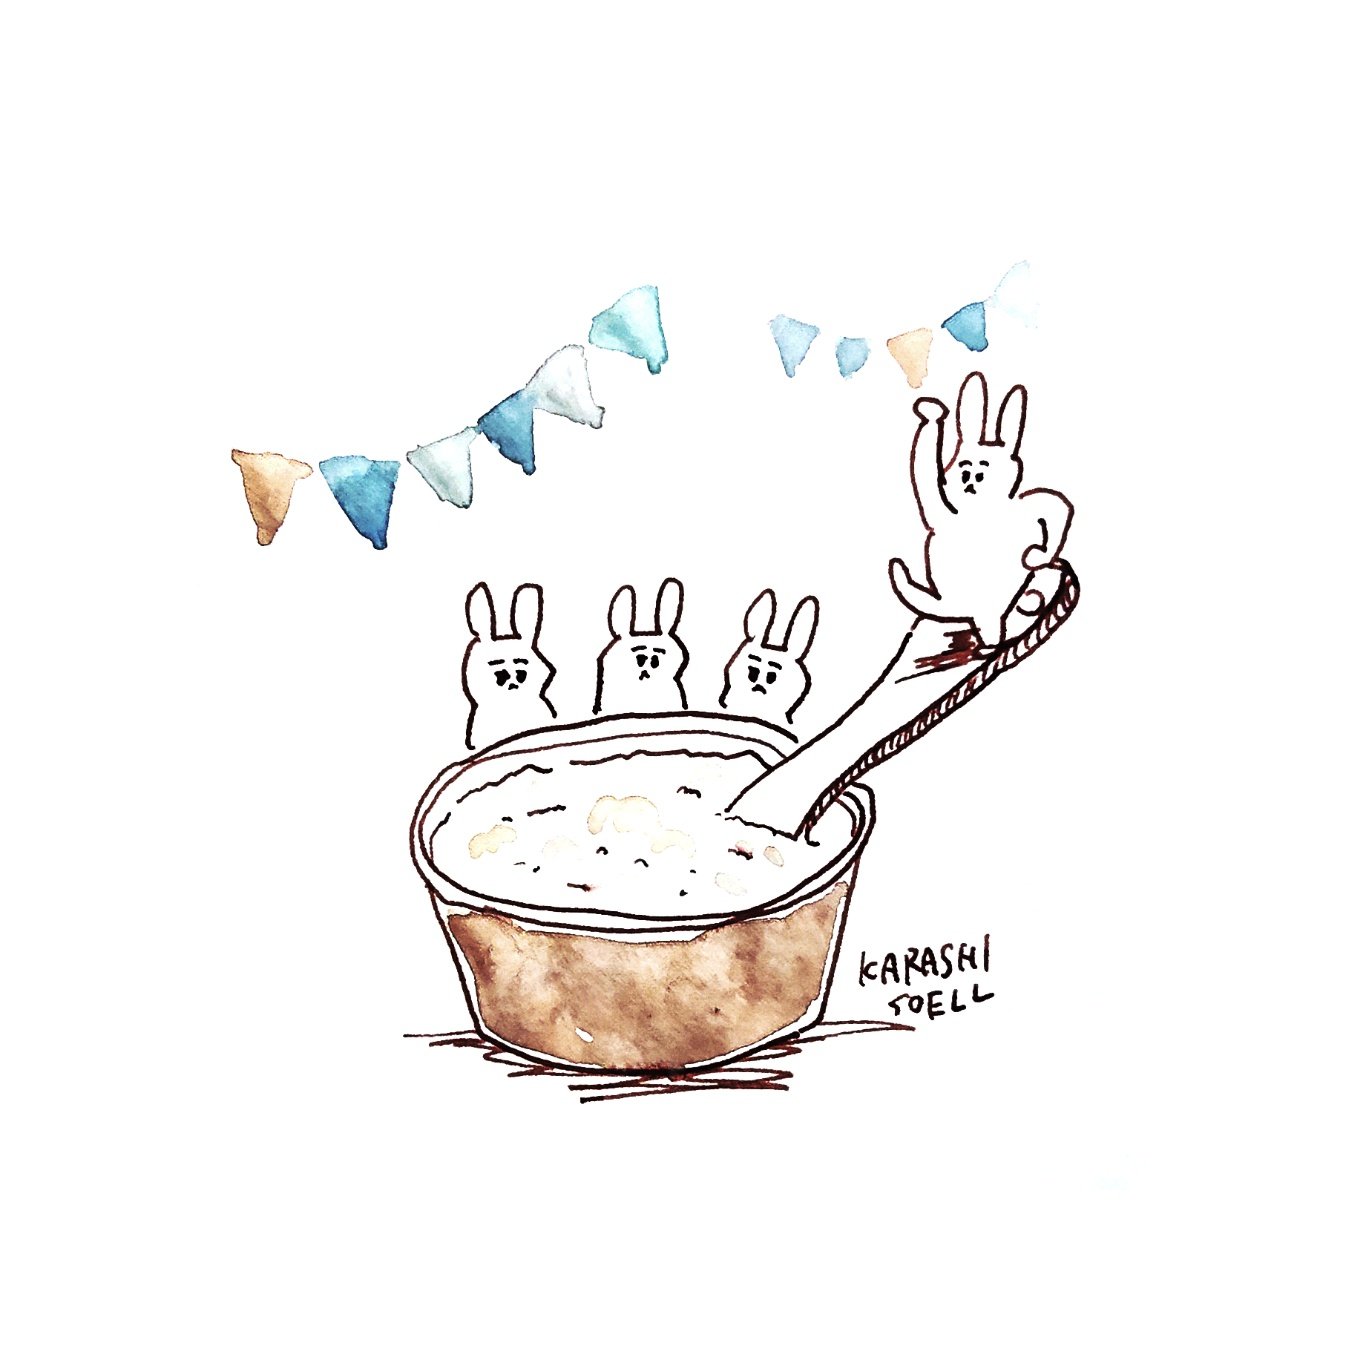 Twitter 上的 カラシソエル イラストレーター 今日のイラスト うさぎたちのカップアイス祭り 今日のカラシイラスト T Co Vyqdv4y29w Twitter